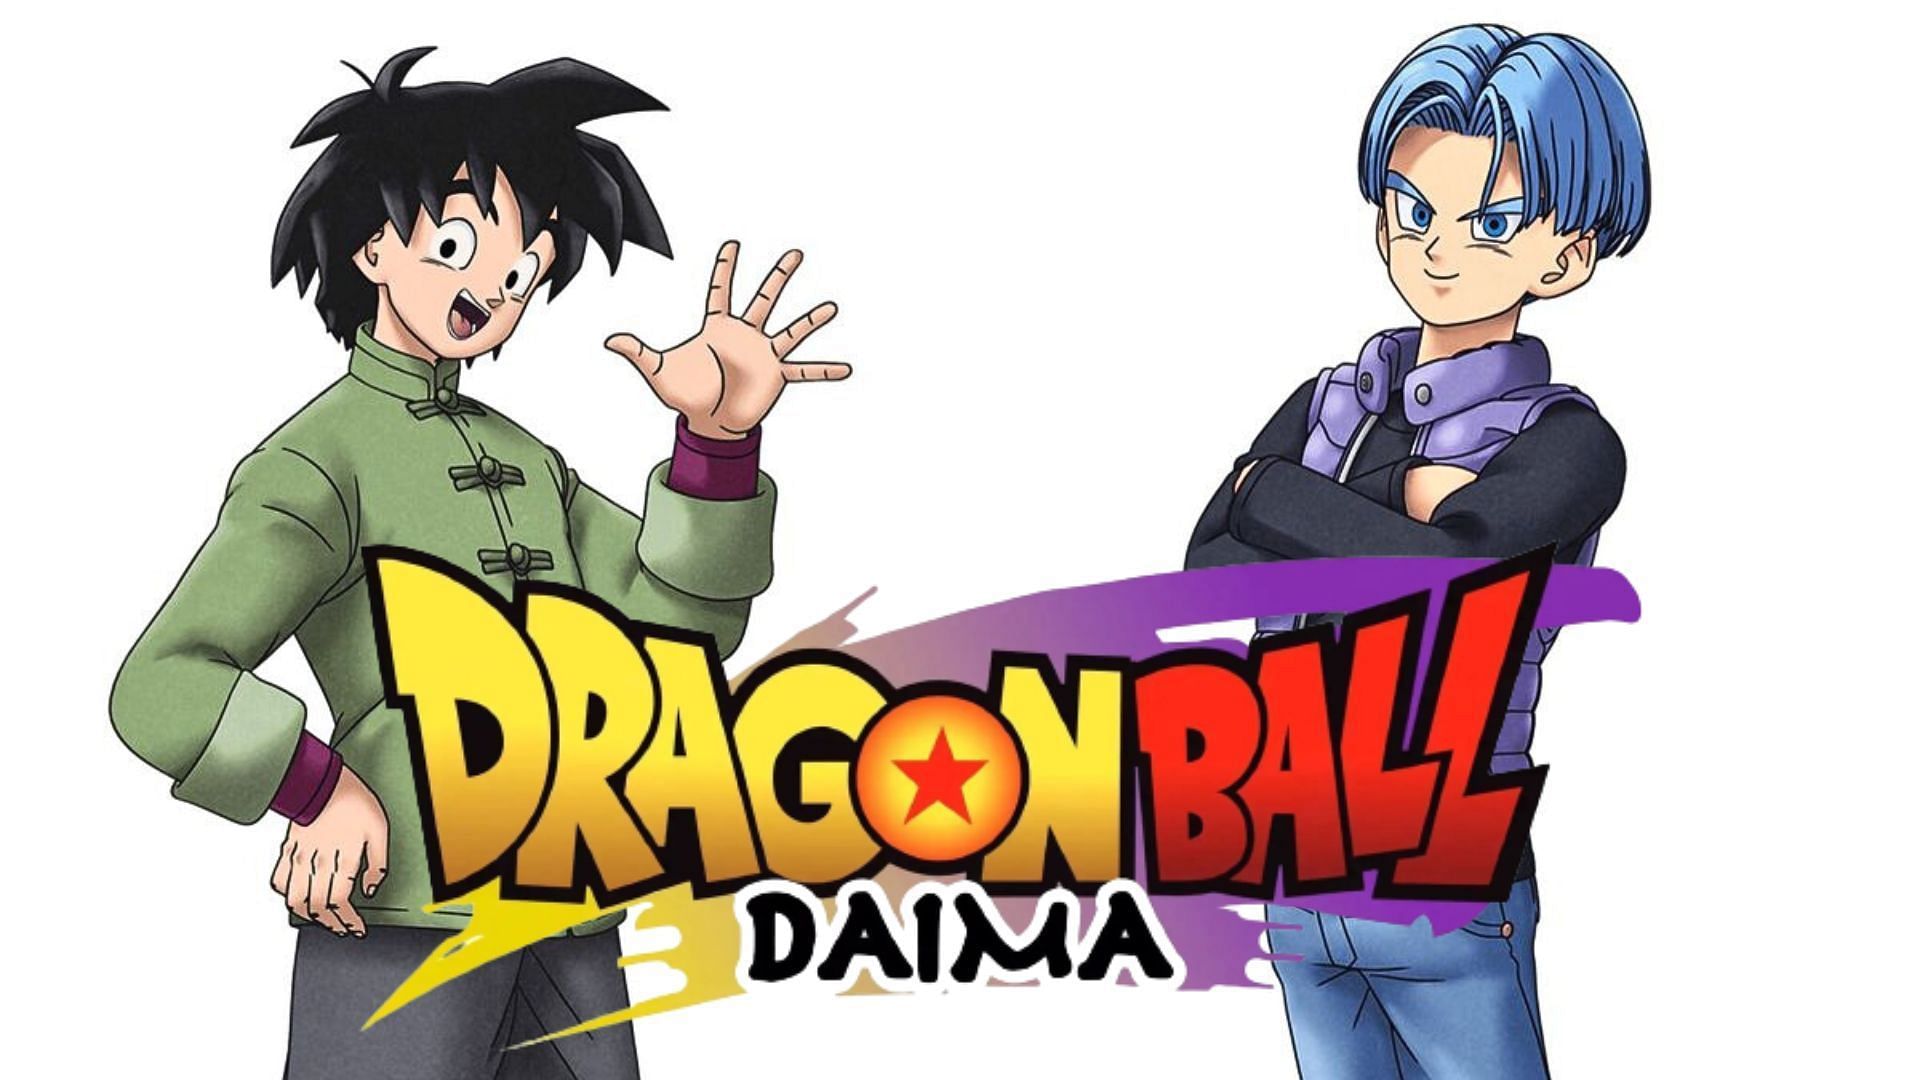 Dragon Ball fans fuming over DAIMA ruining this fan-favorite duo